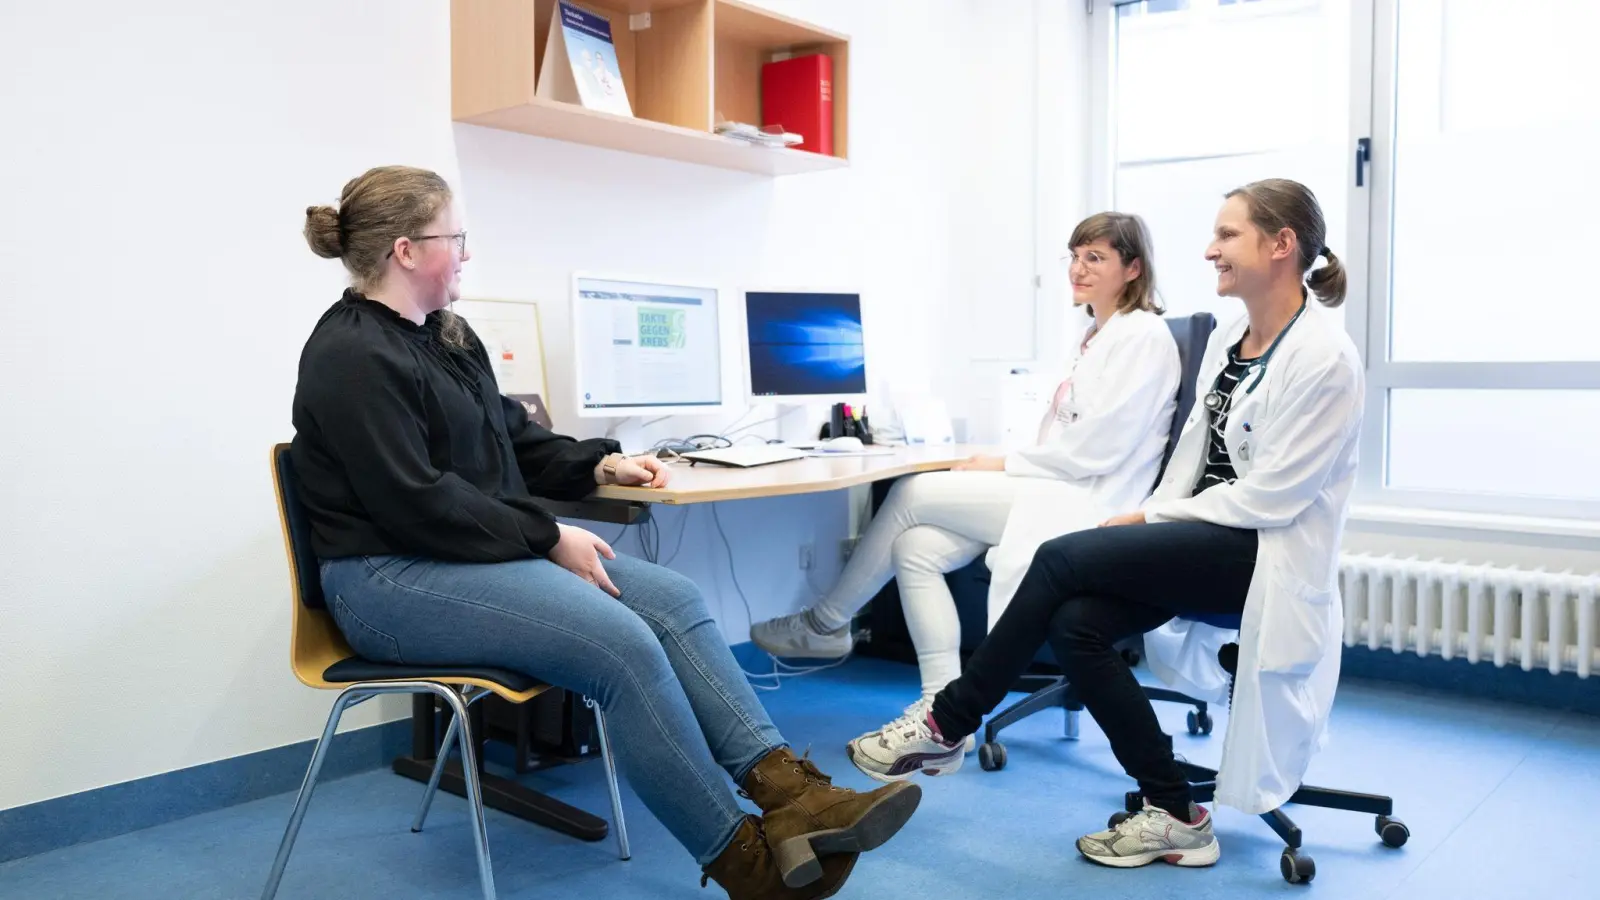 Judith Lohse (r), Kinderärztin, und Katharina Egger-Heidrich, Fachärztin Onkologie, sitzen mit einer Patientin im Nationalen Centrum für Tumorerkrankungen in einem Behandlungsraum. (Foto: Sebastian Kahnert/dpa)